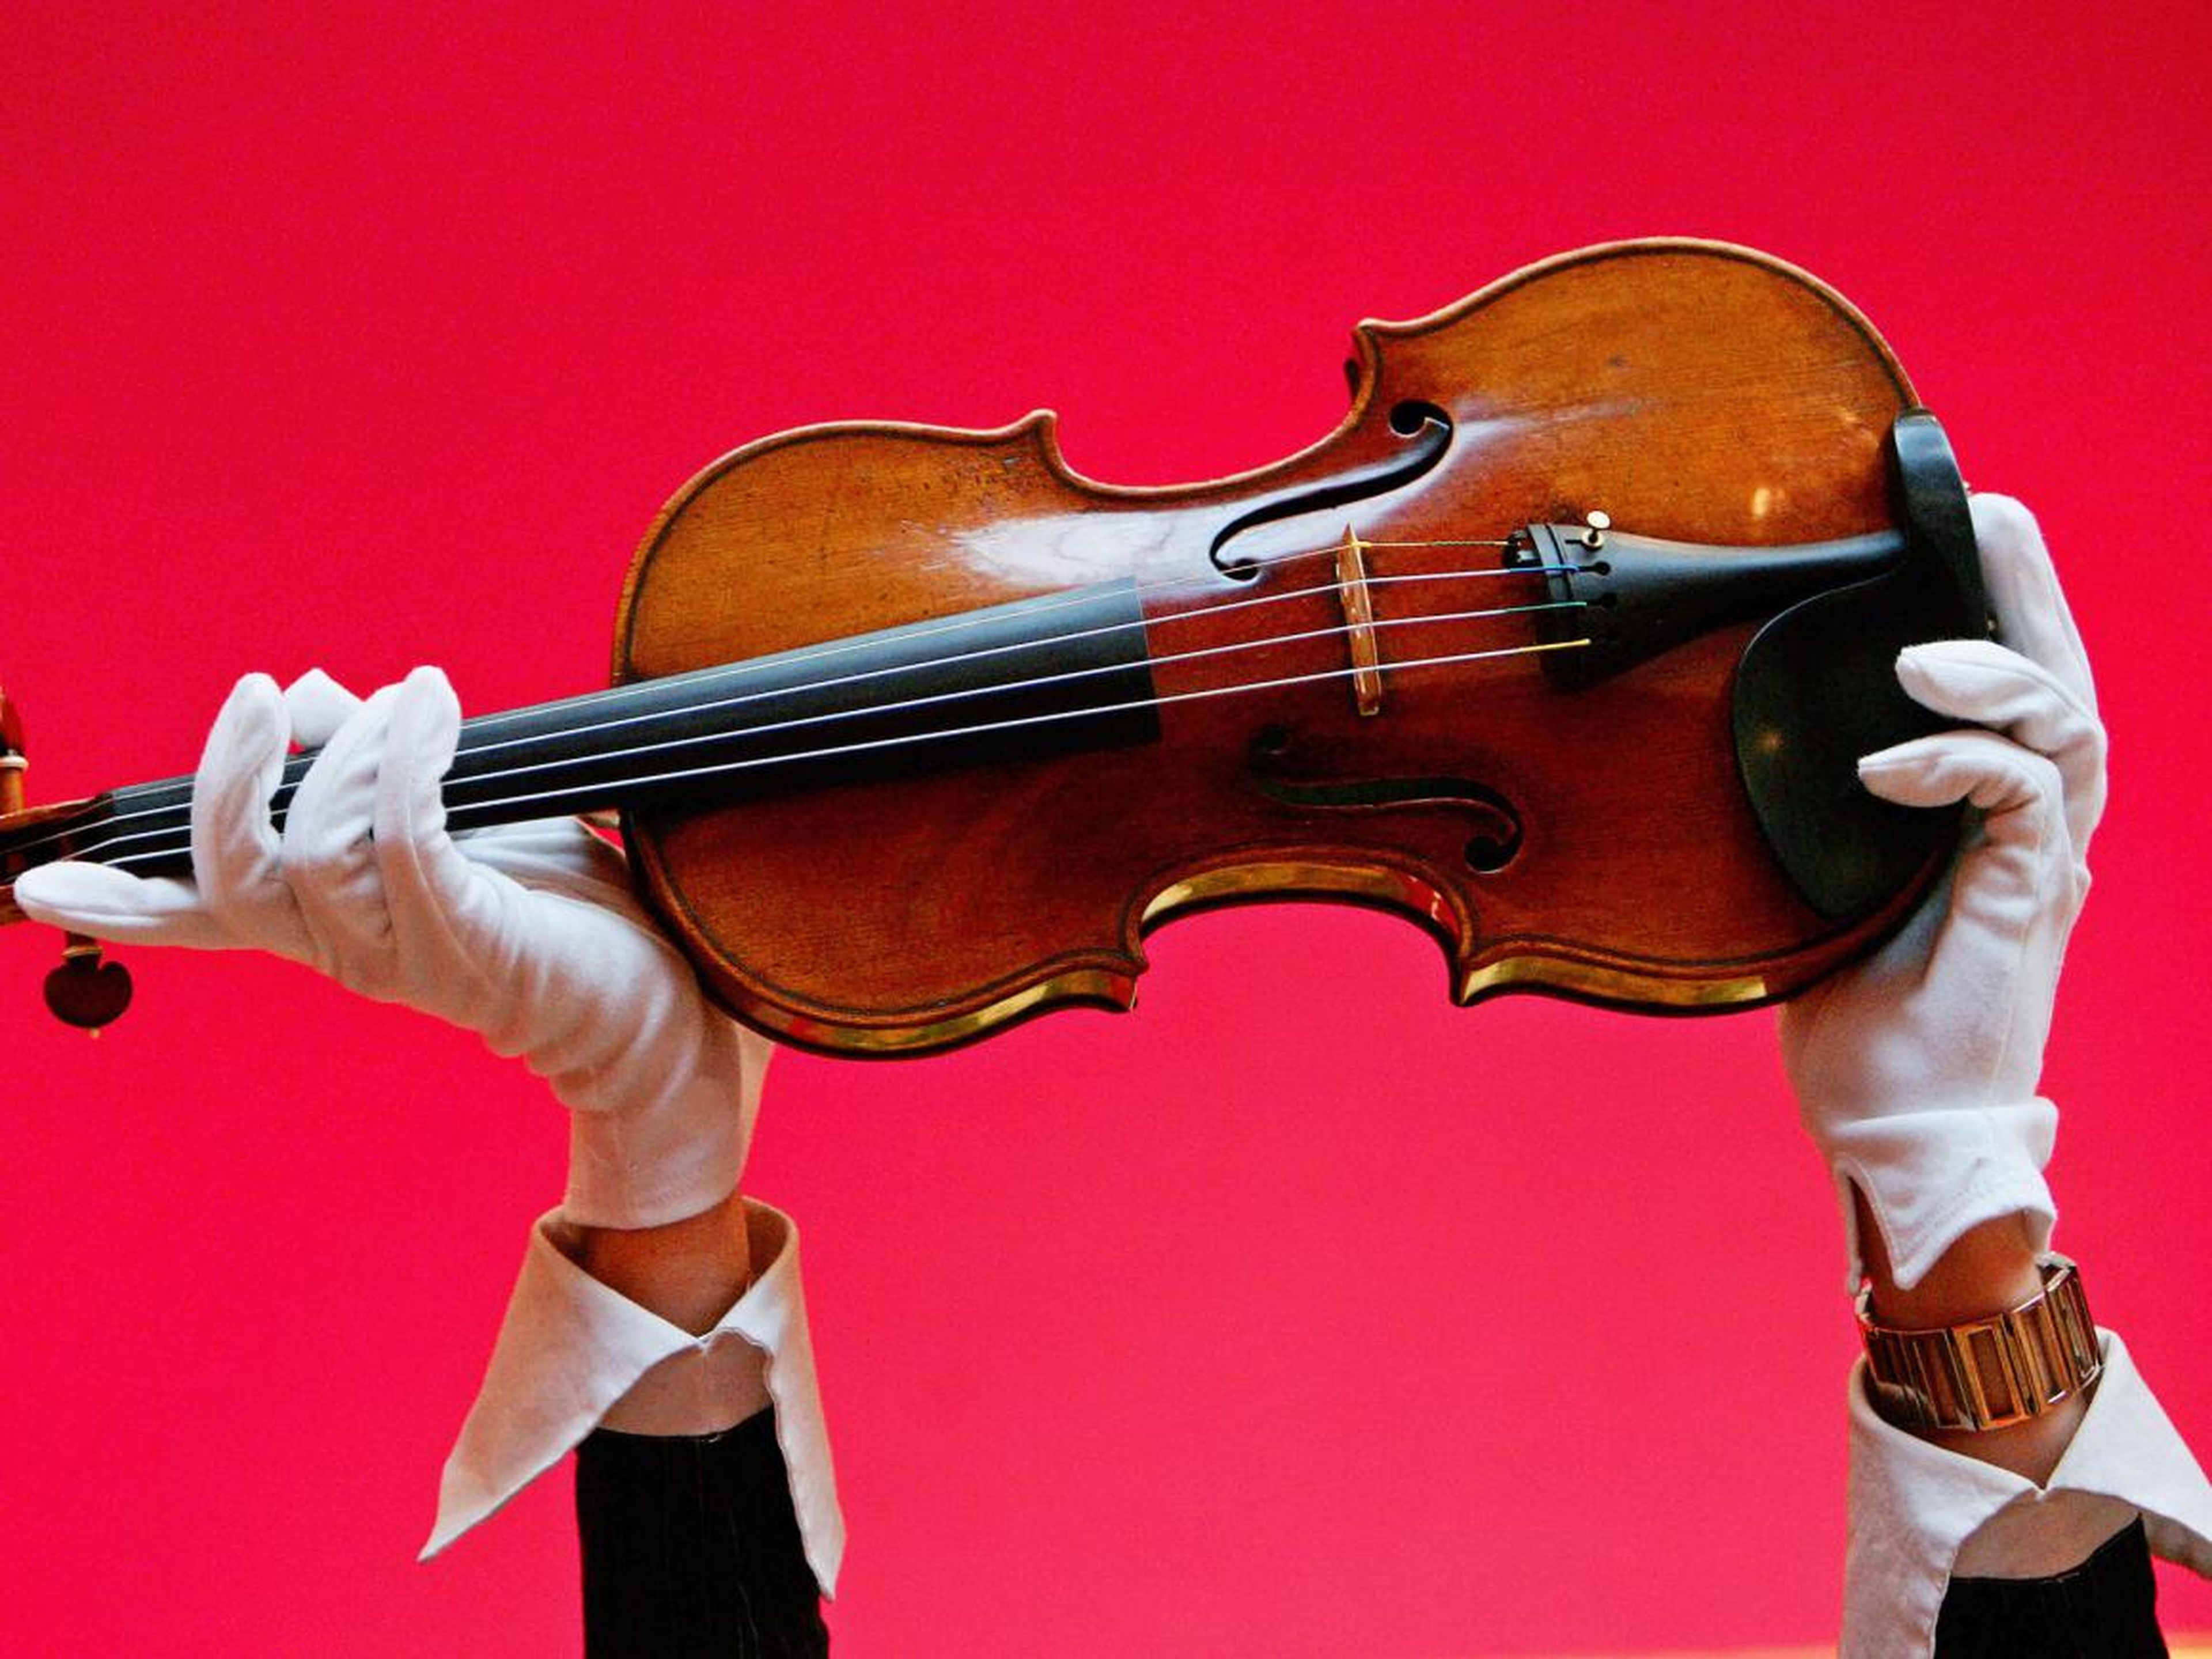 Un violín Stradivarius (no es el mismo violín mencionado).